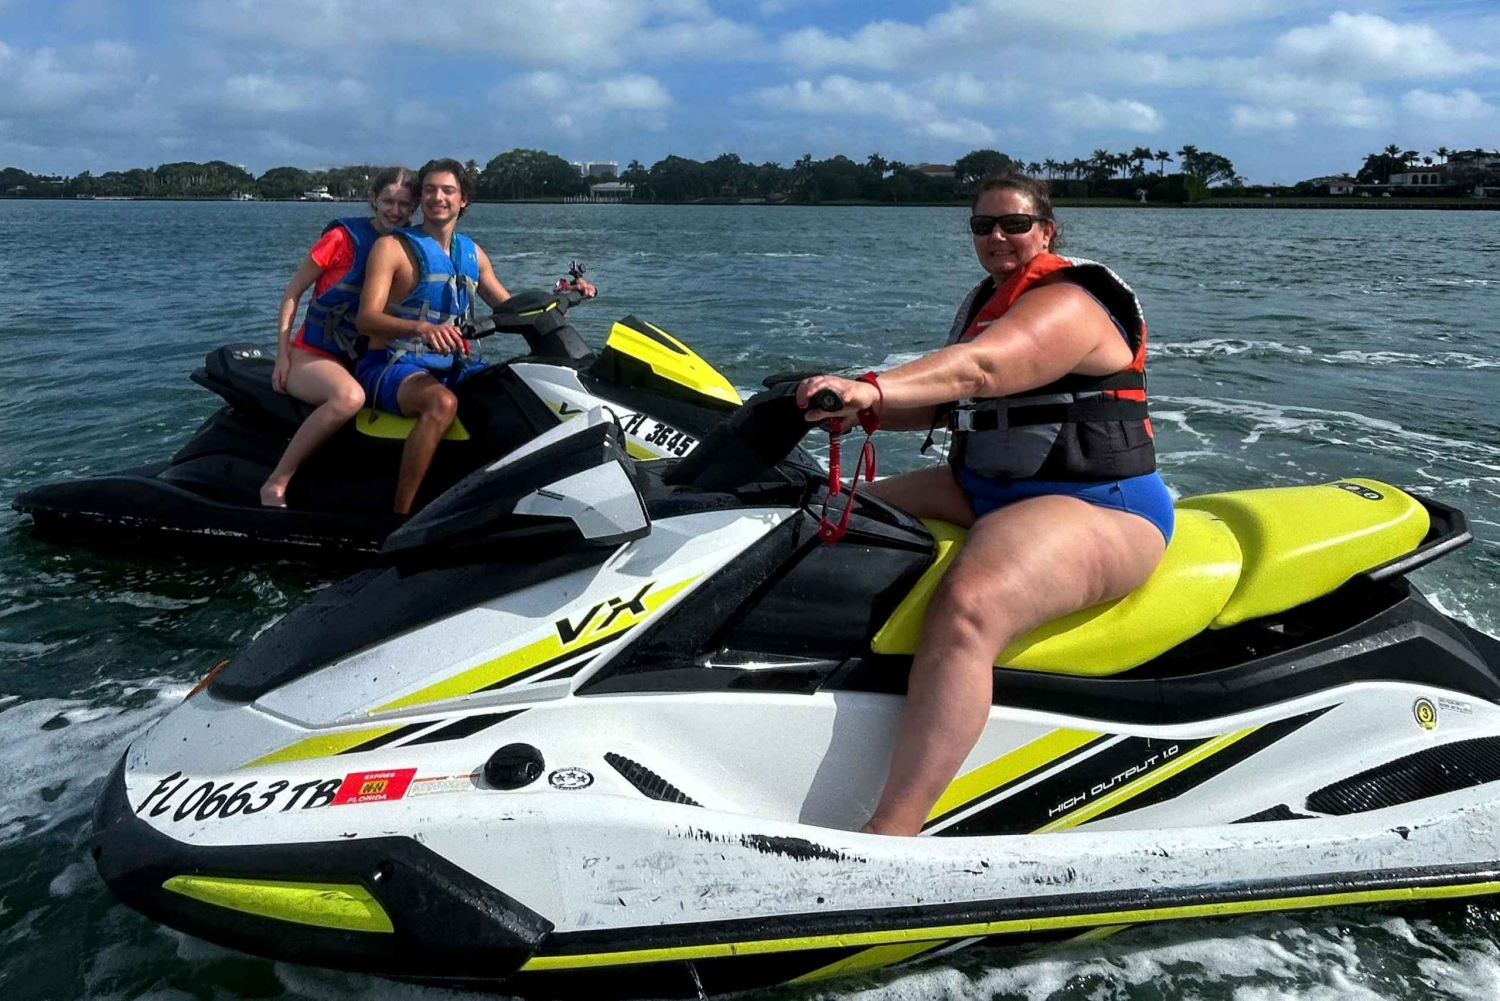 Miami Beach: Alquiler de motos acuáticas con paseo en barco incluido